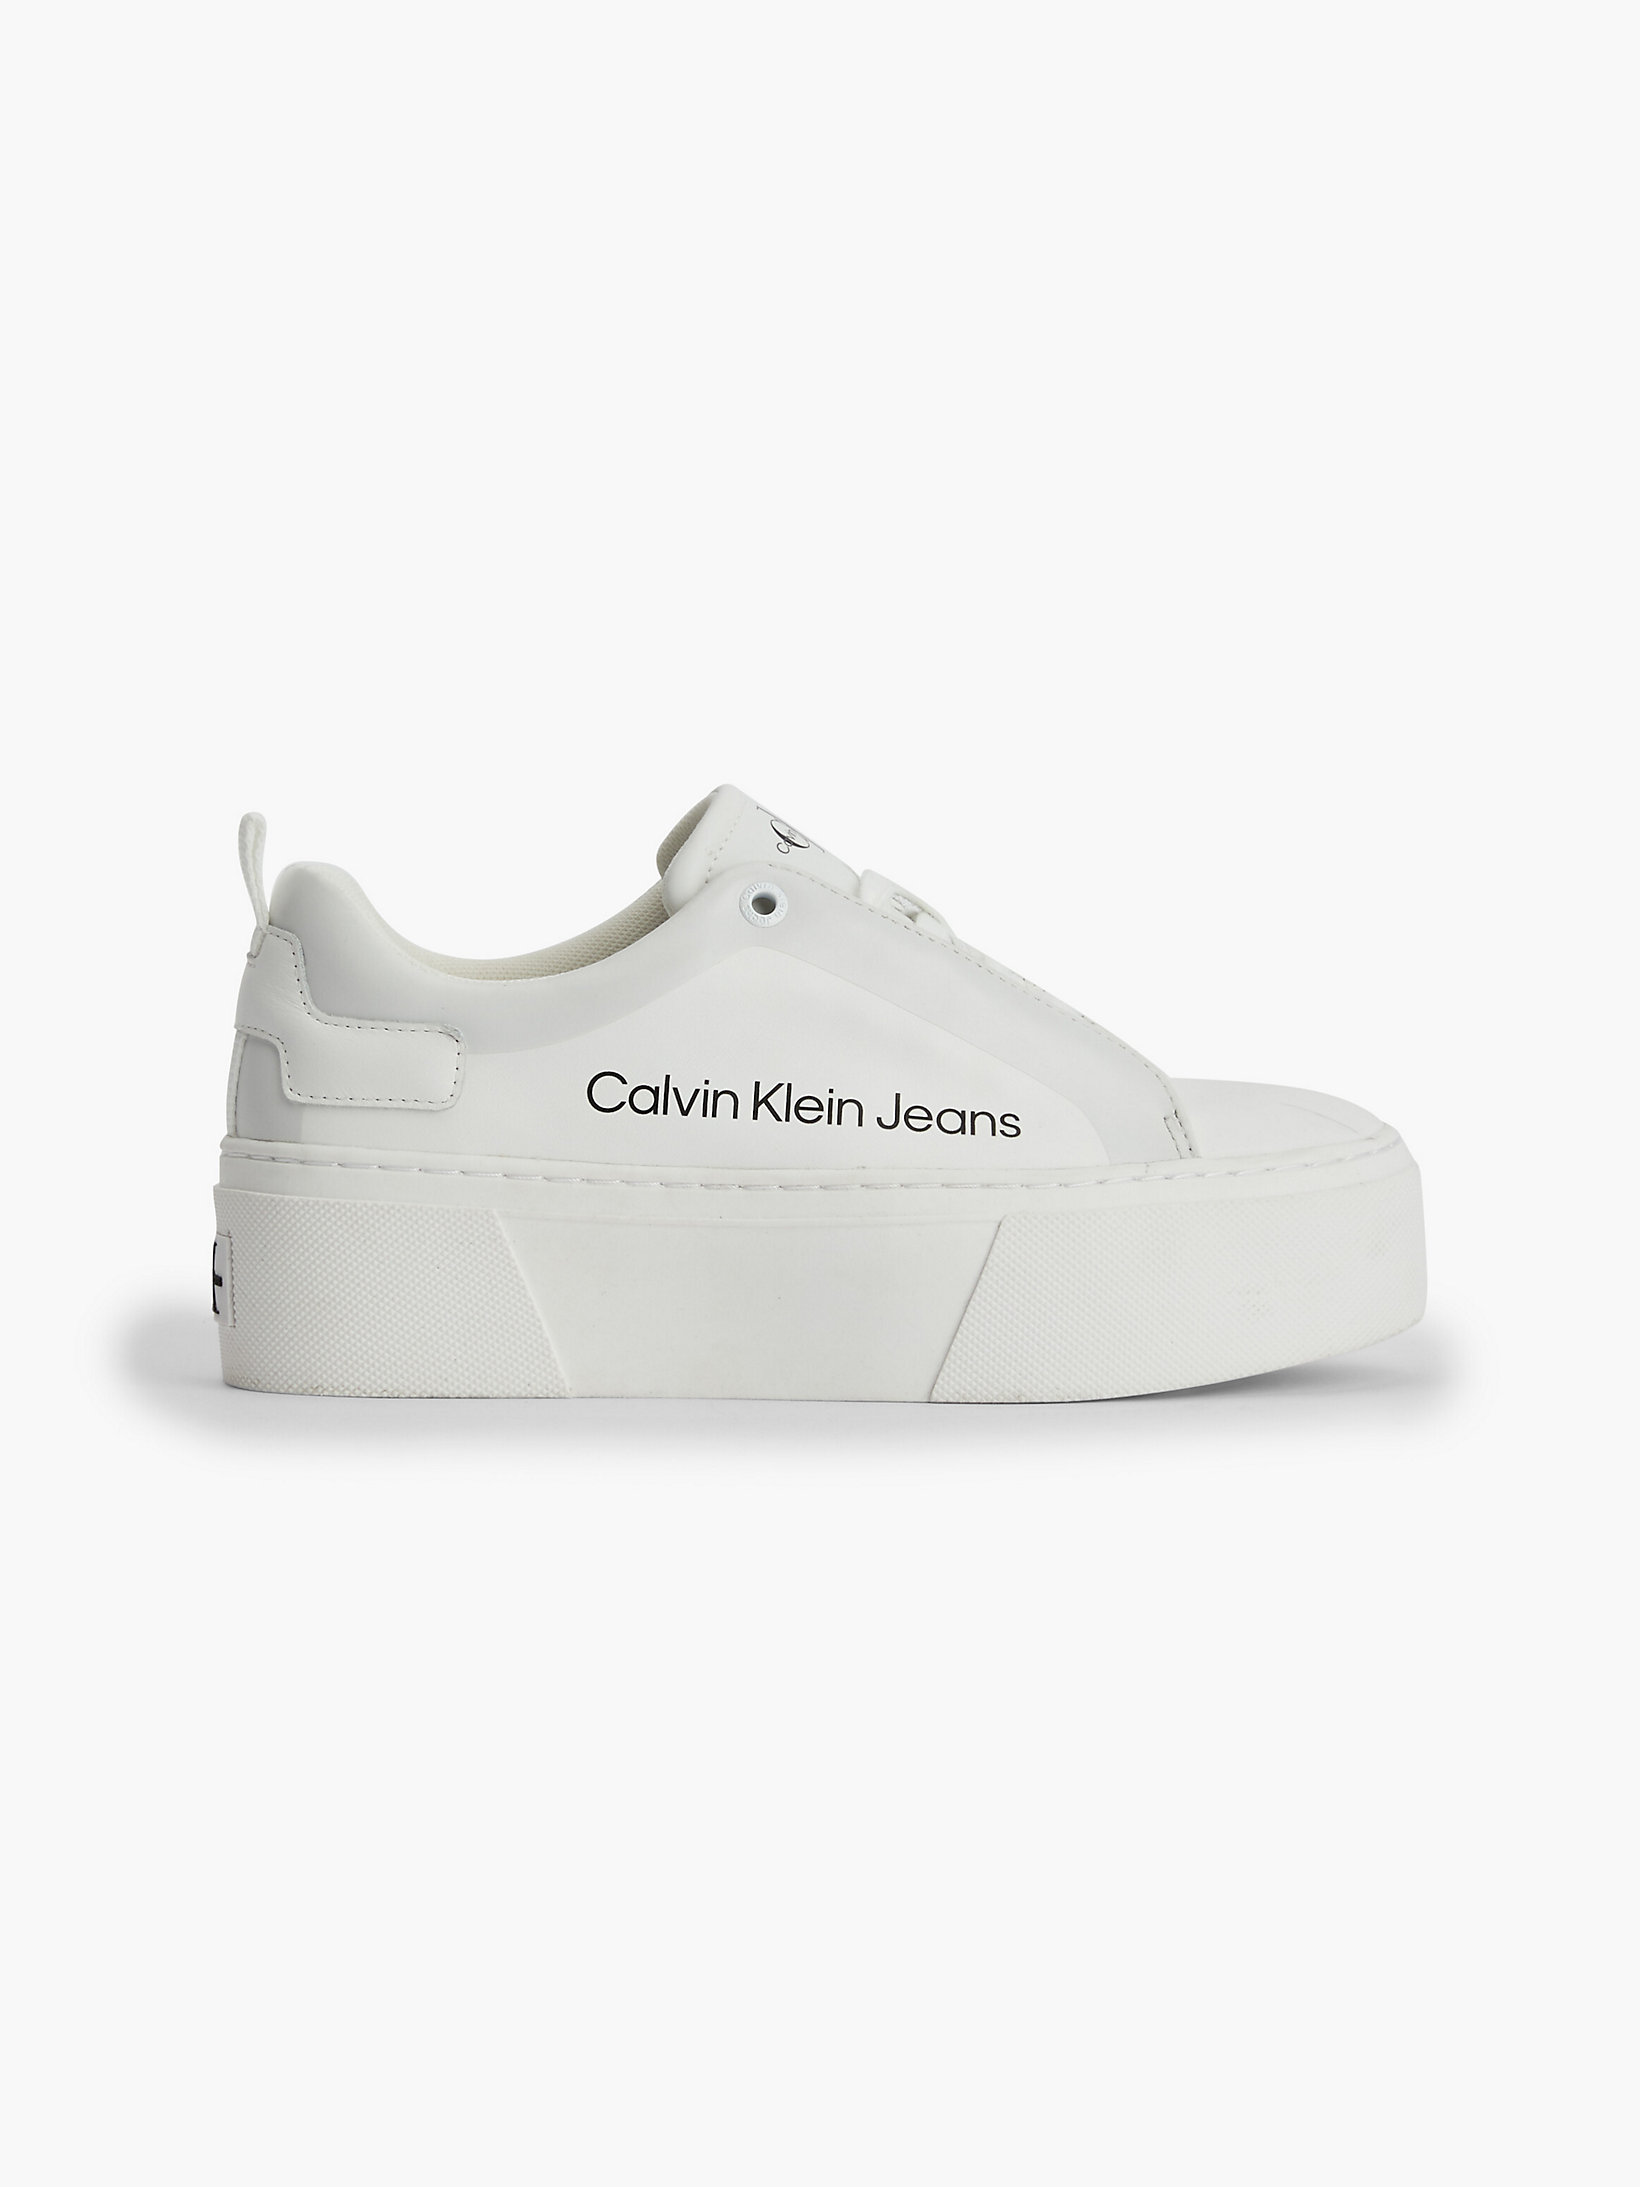 Zapatillas De Plataforma De Piel > Bright White > undefined mujer > Calvin Klein